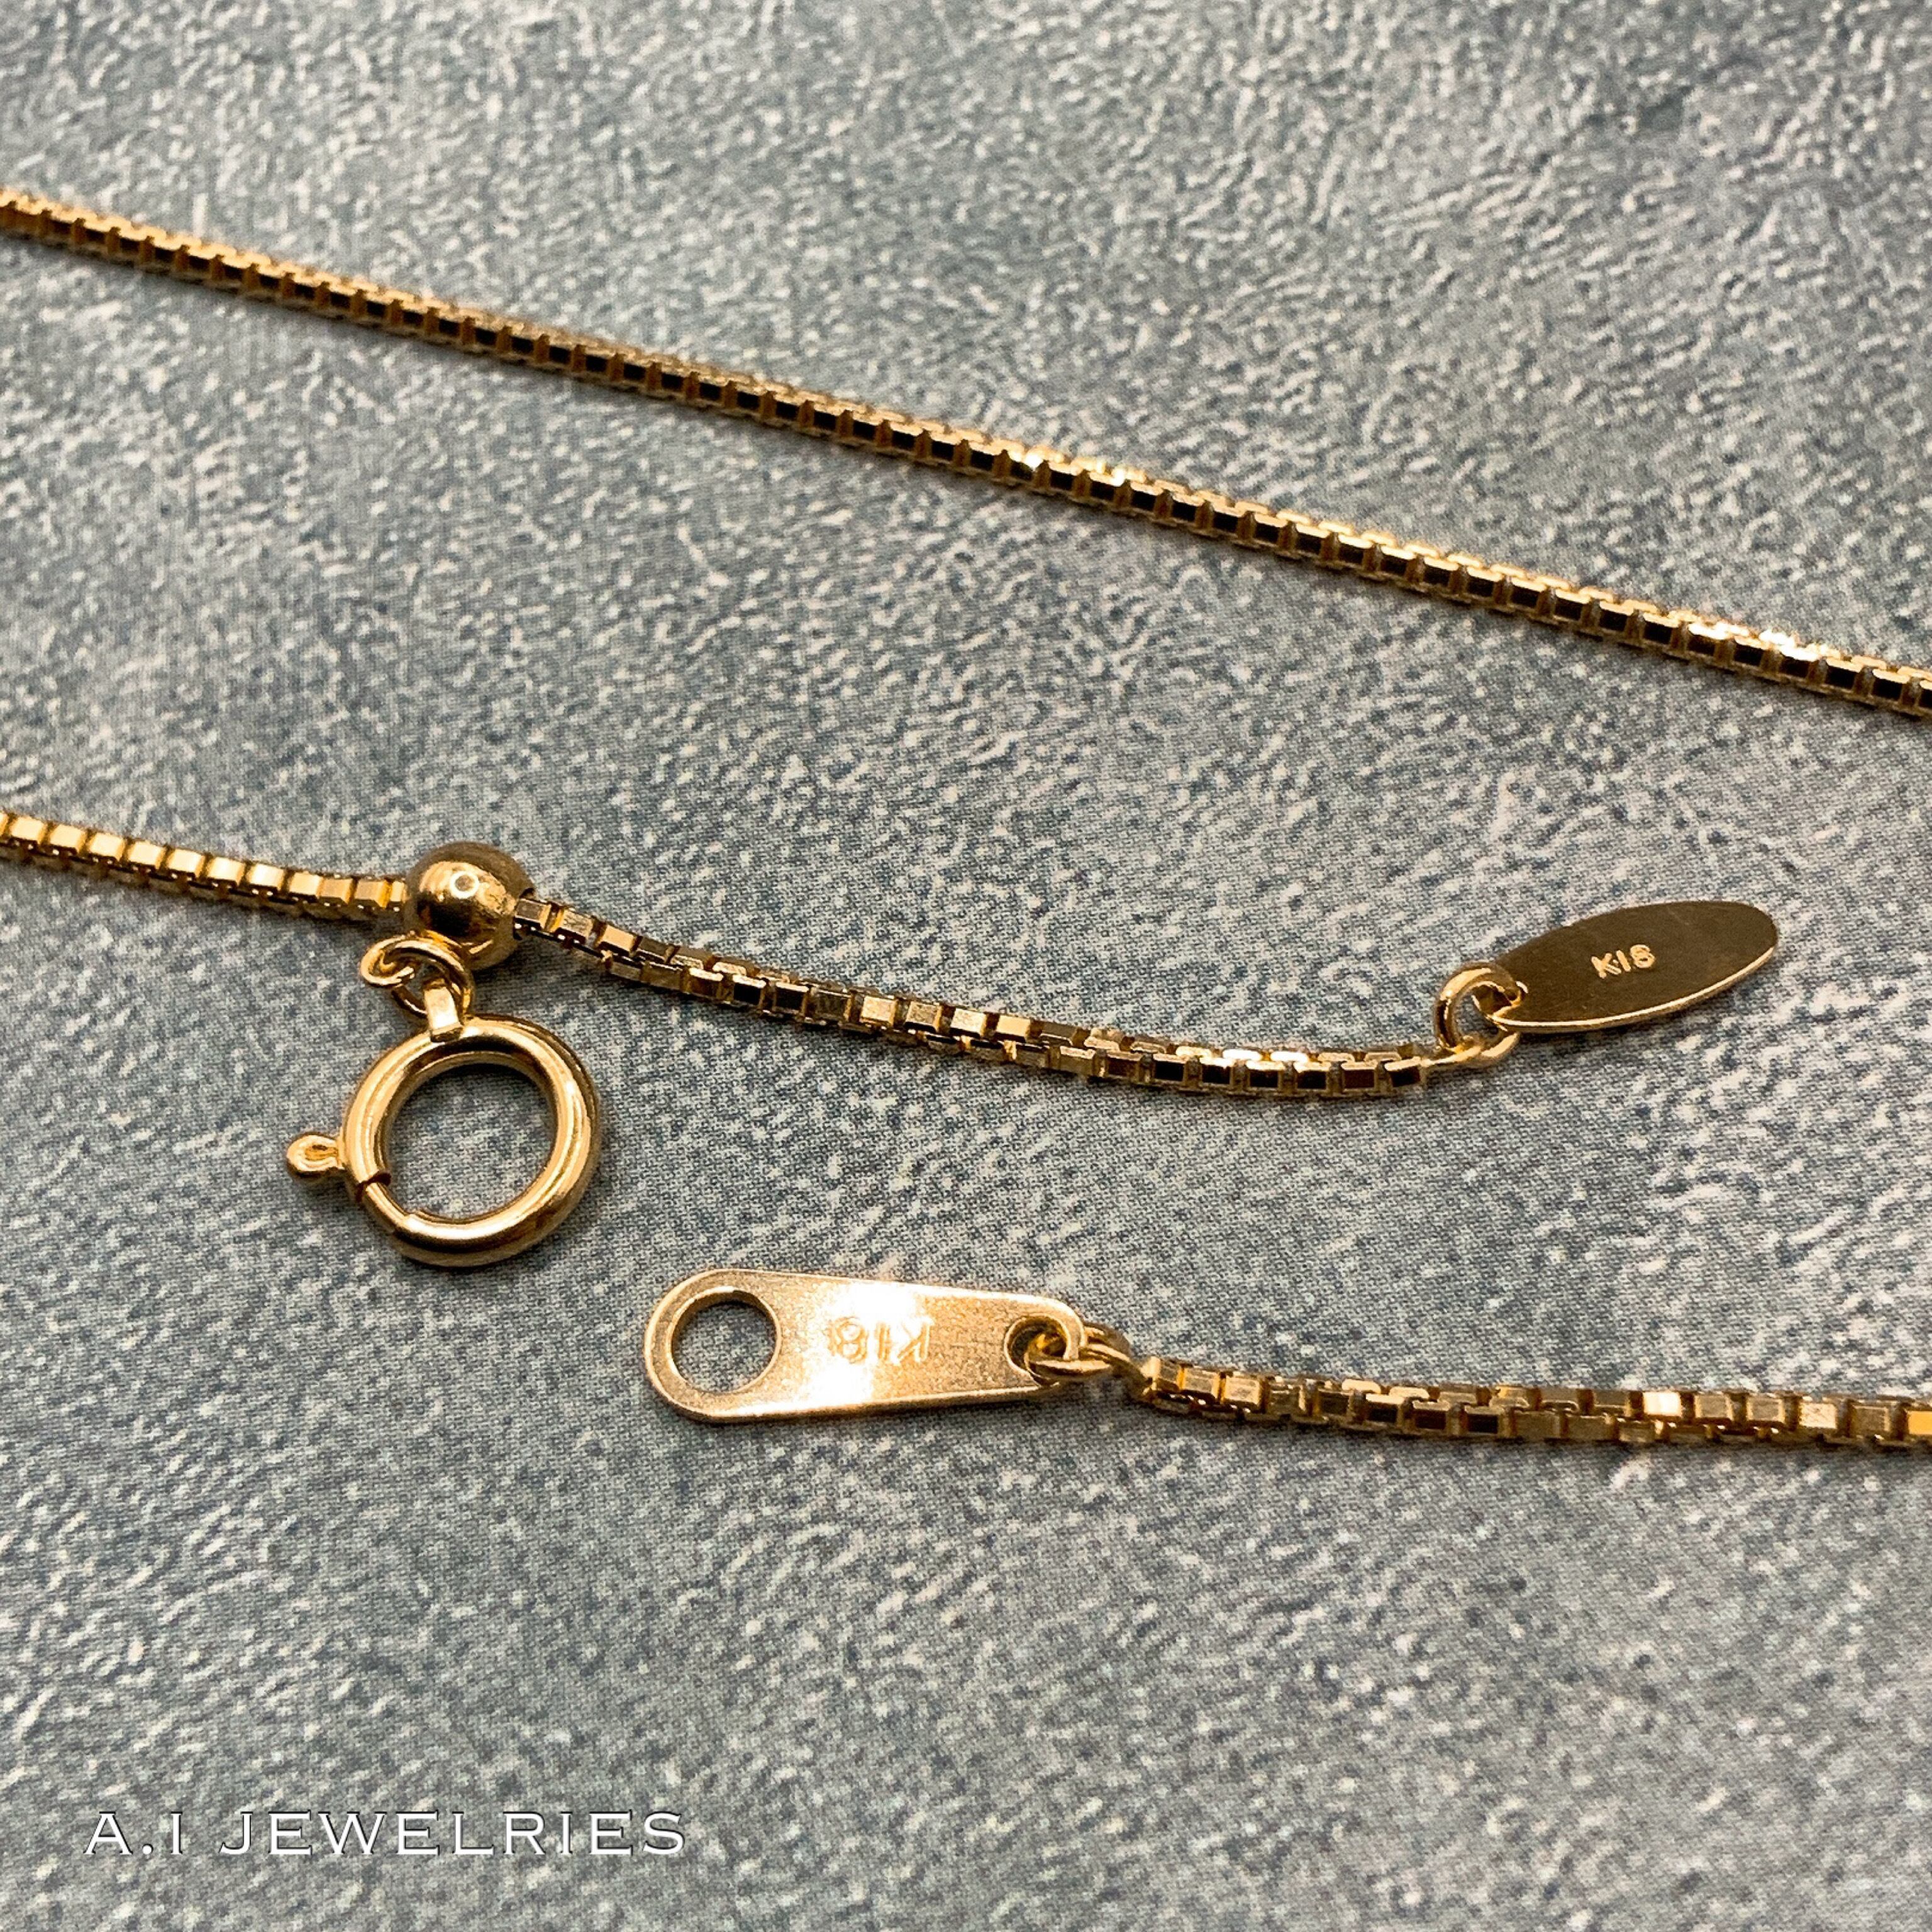 18金 ベネチアン ネックレス メンズ 1.00φ 50cm /K18 Venetian necklace 1.00φ 50cm  品番kvn100-50 JEWELRIES エイアイジュエリーズ